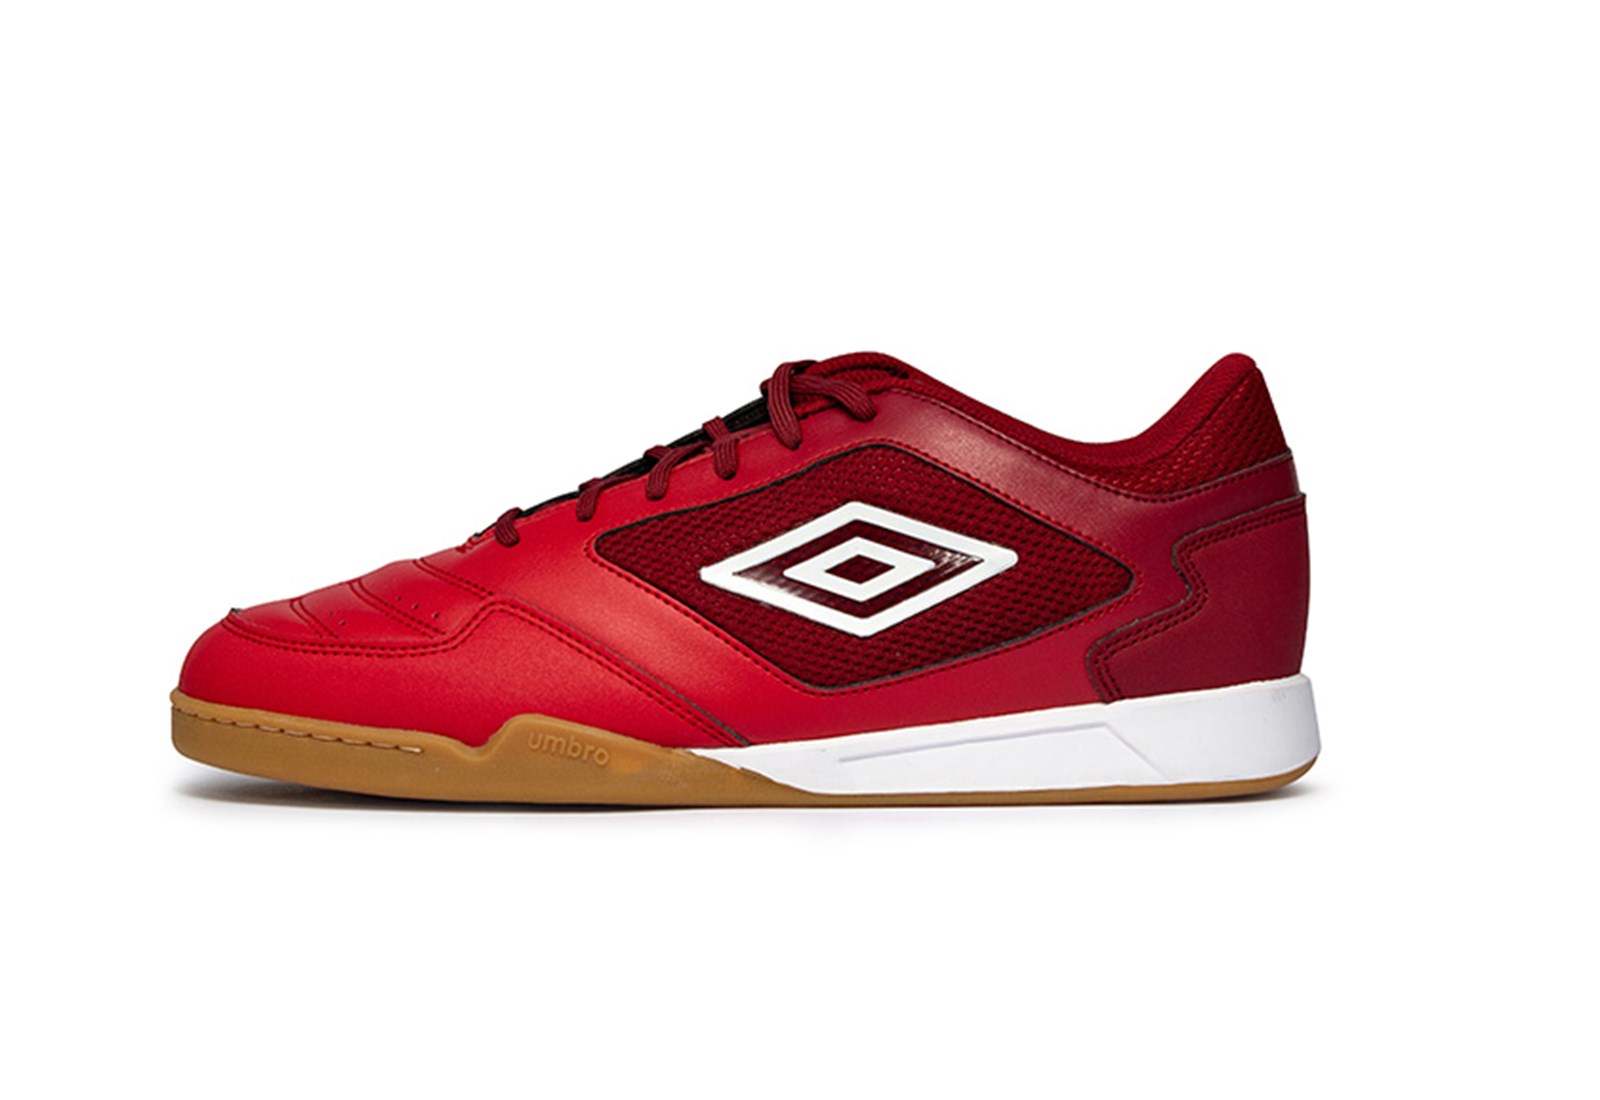 Umbro Futsal Shoes